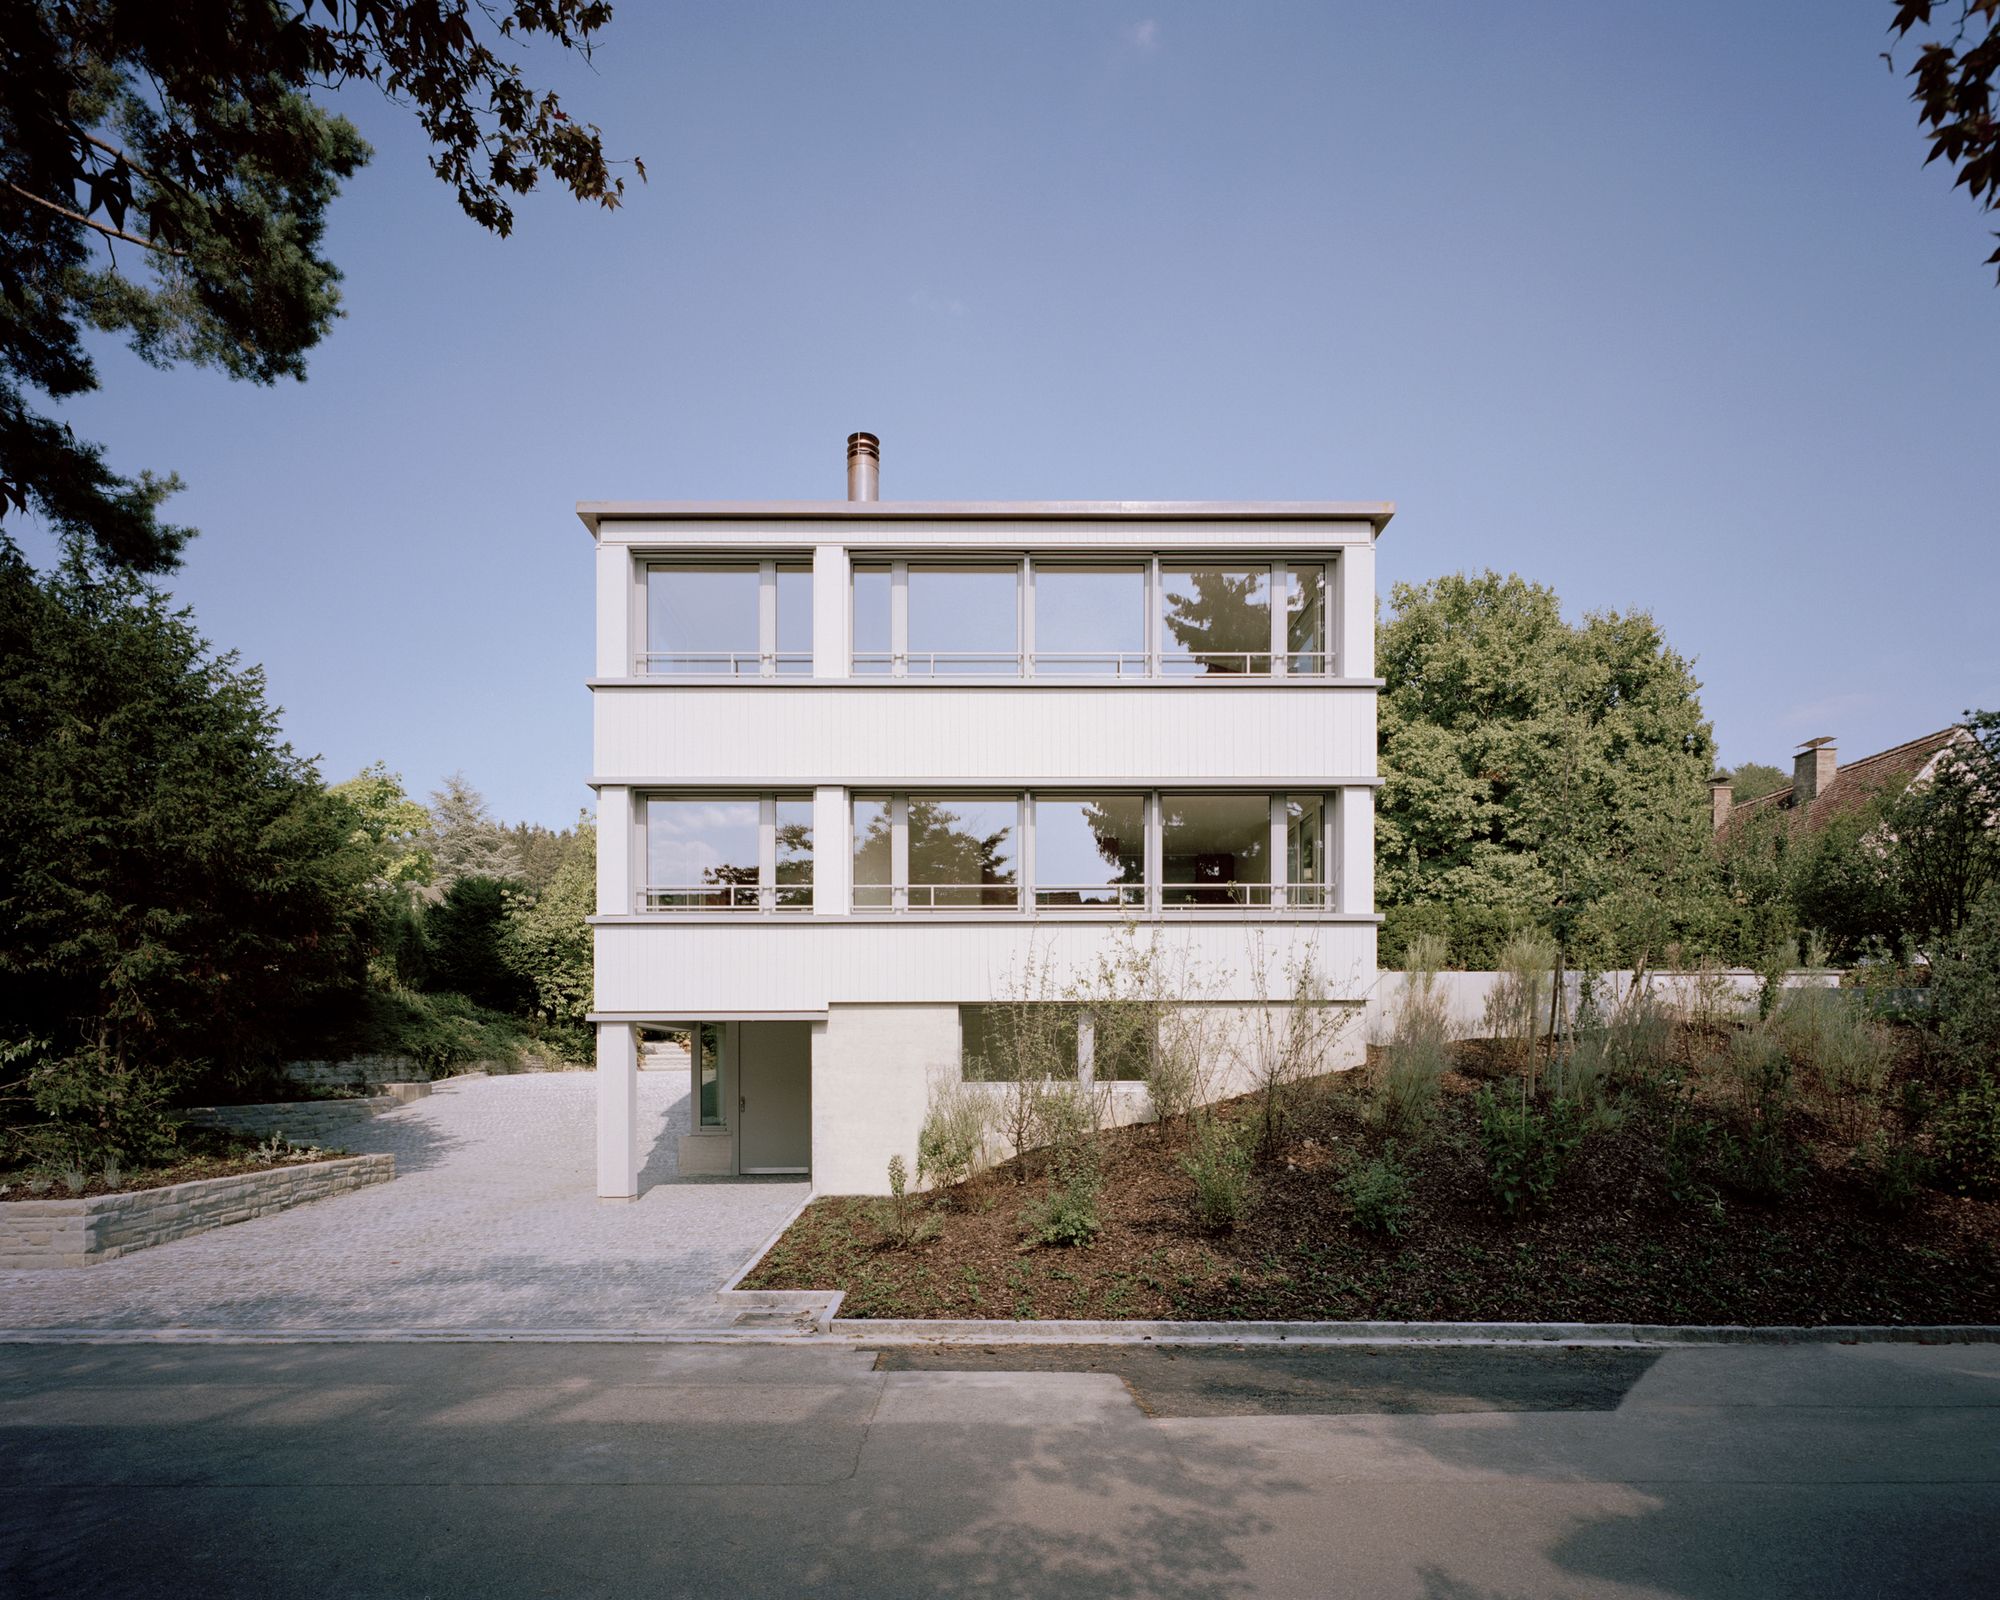 Haus in Winterthur by Cyrill Dettline Architekturstudio